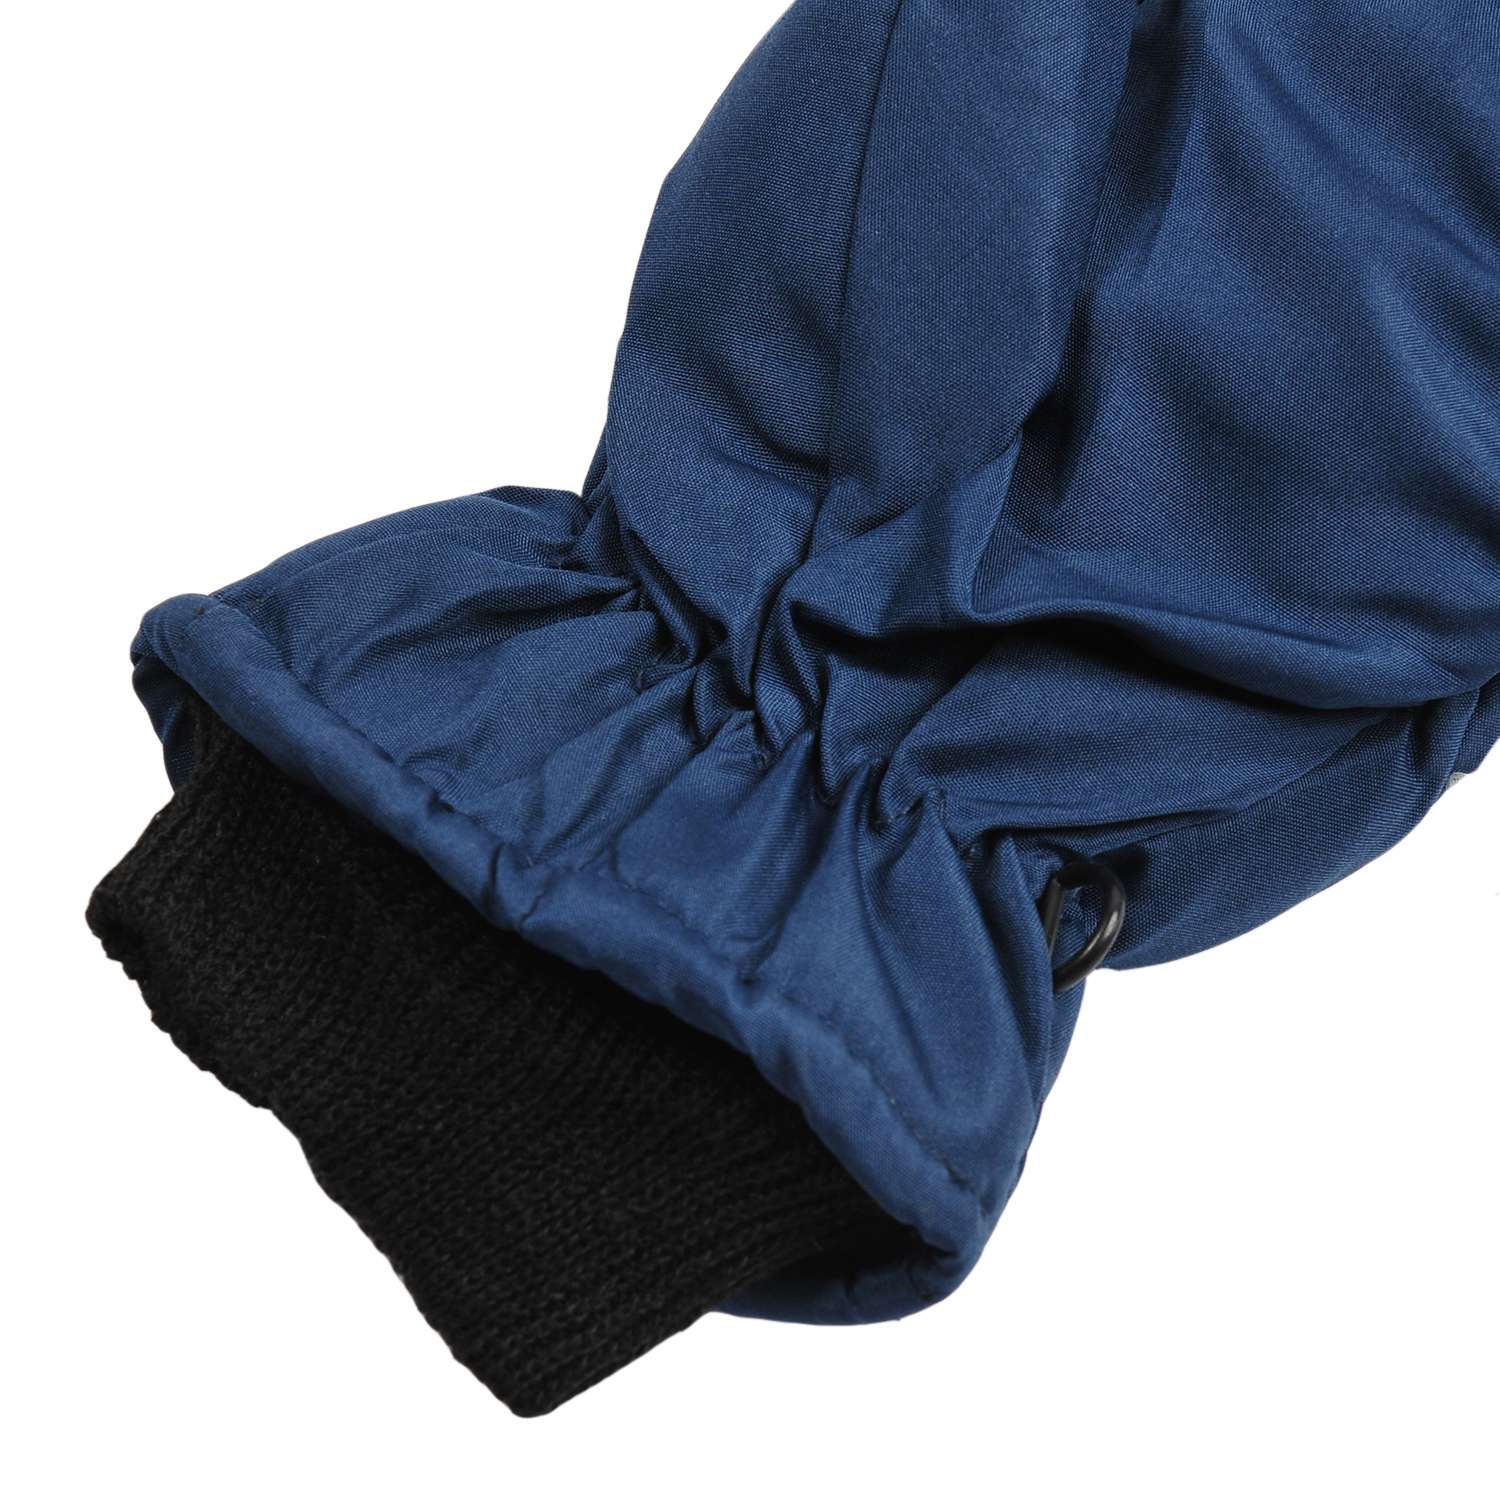 Варежки S.gloves M 2166-M темно-синий - фото 2